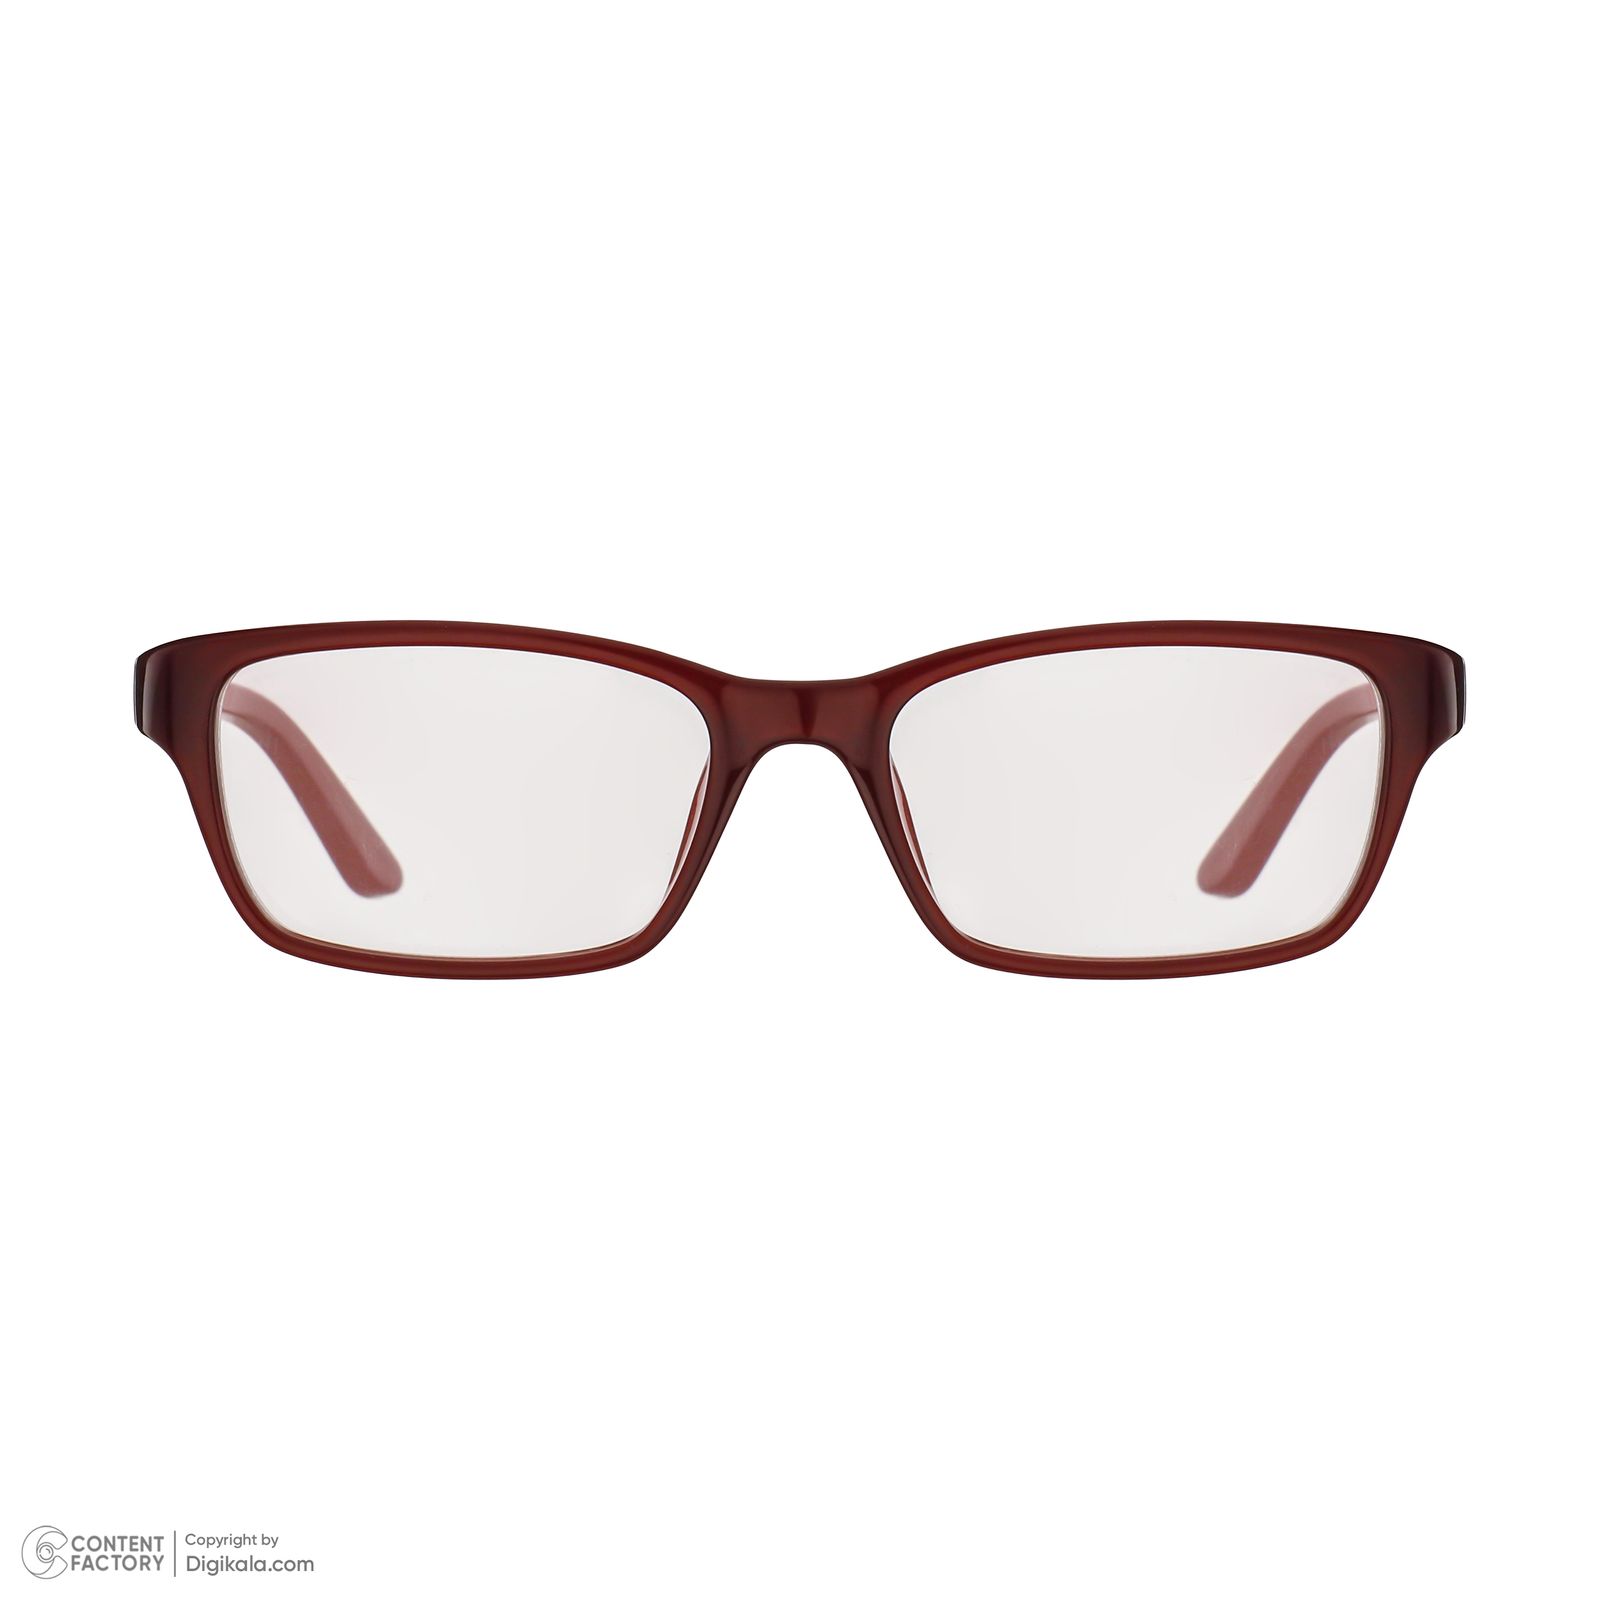 فریم عینک طبی کلوین کلاین مدل 5825-615 -  - 6